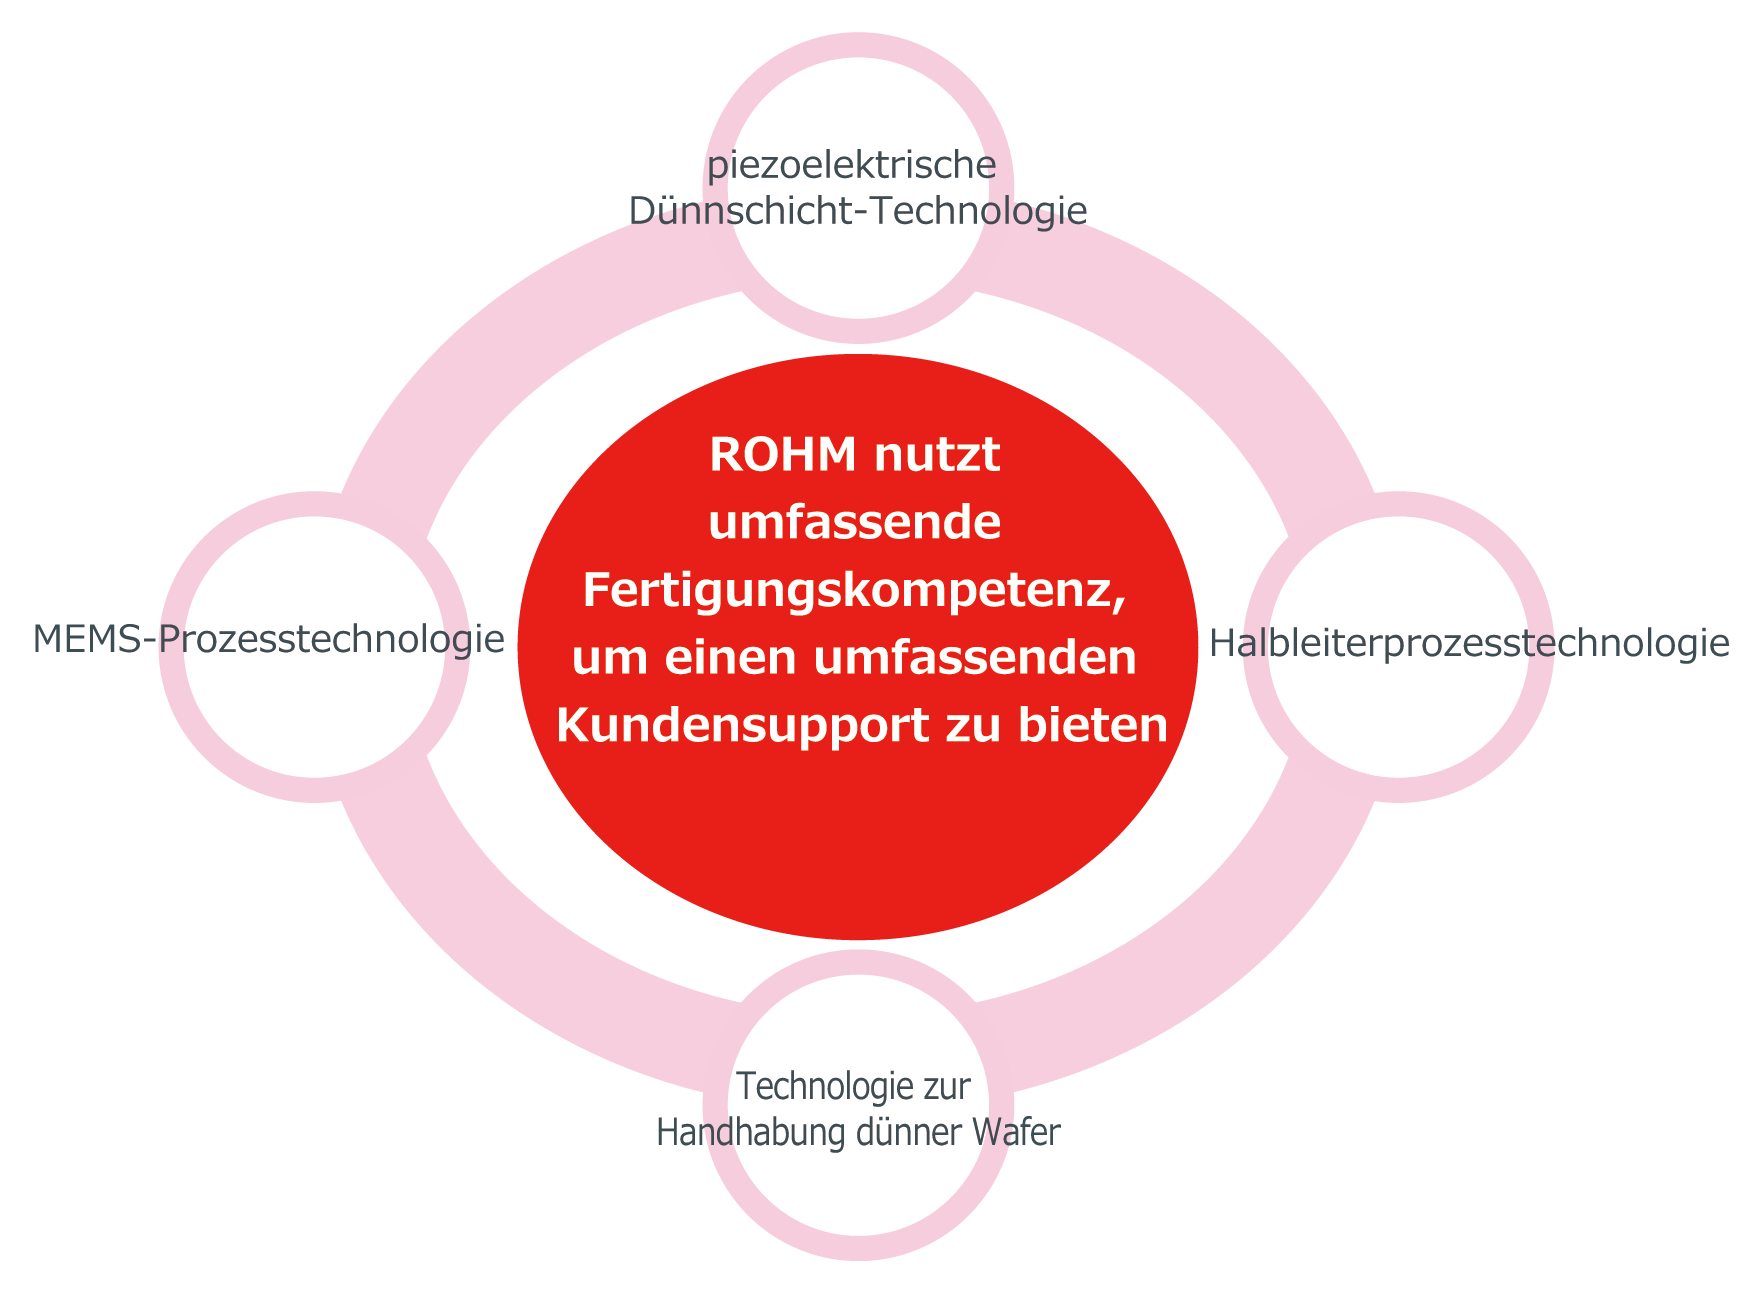 ROHM nutzt umfassende Fertigungskompetenz, um einen umfassenden Kundensupport zu bieten